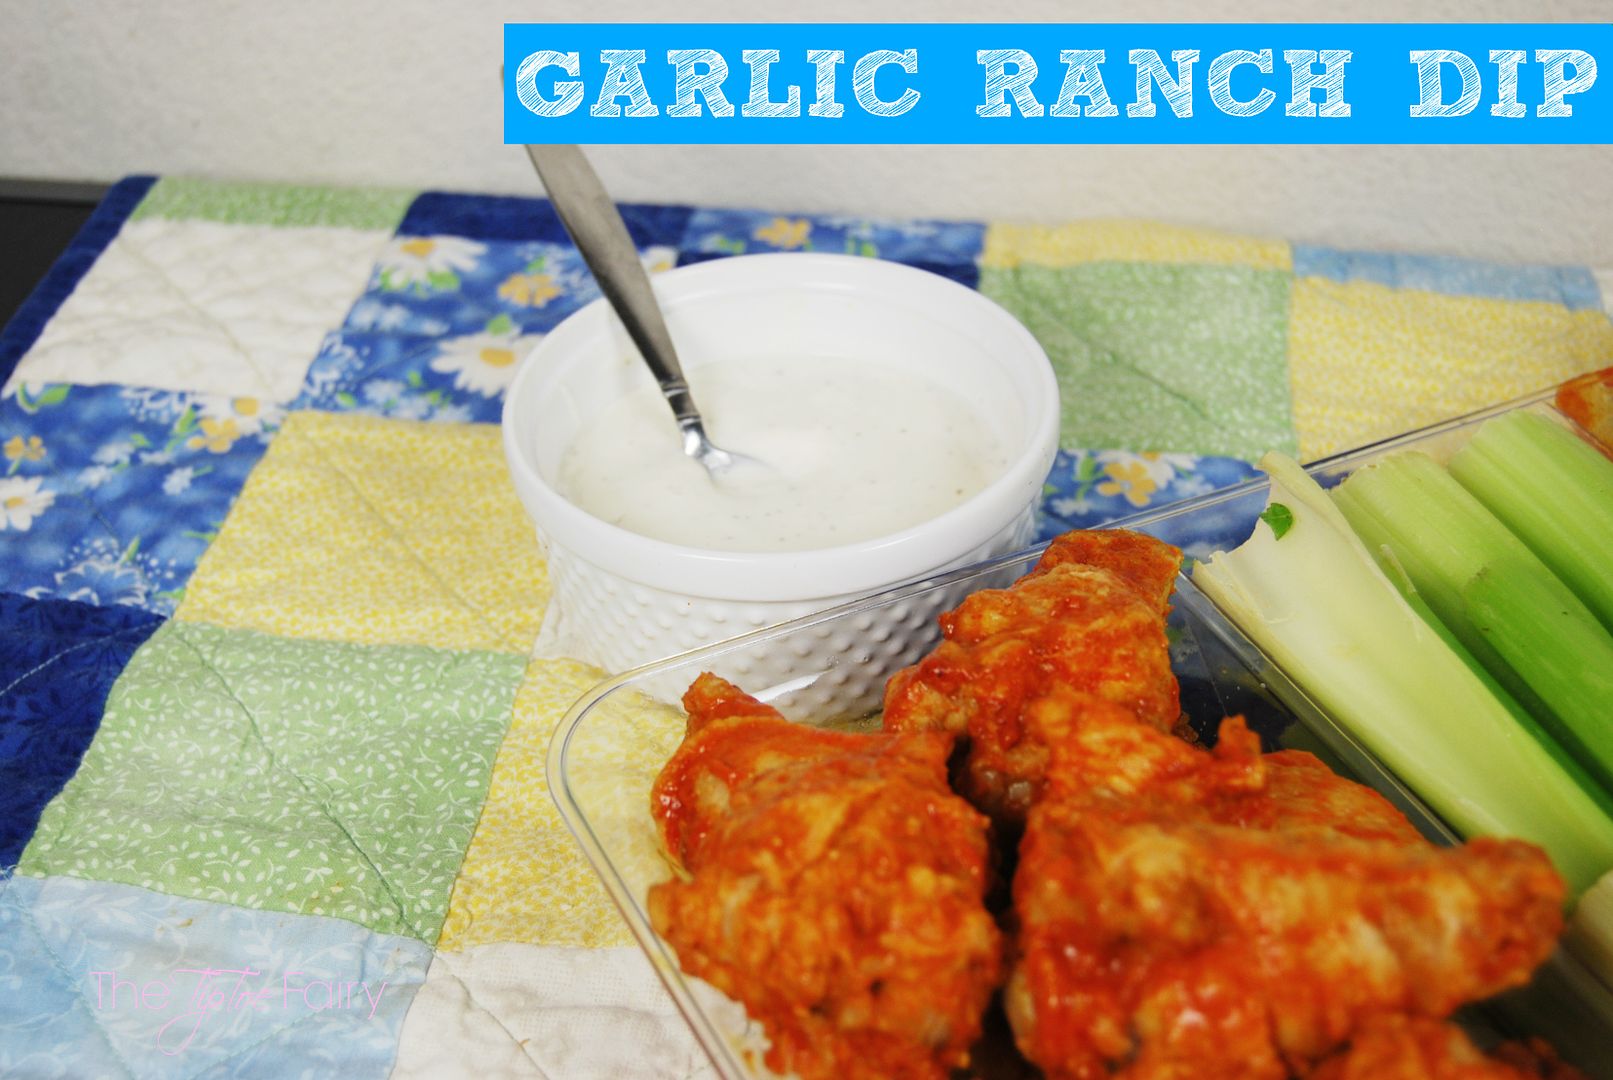 Garlic Ranch Dip for Wings | #wingsandwipes #pmedia #ad #diprecipes #garlicranch #ranch